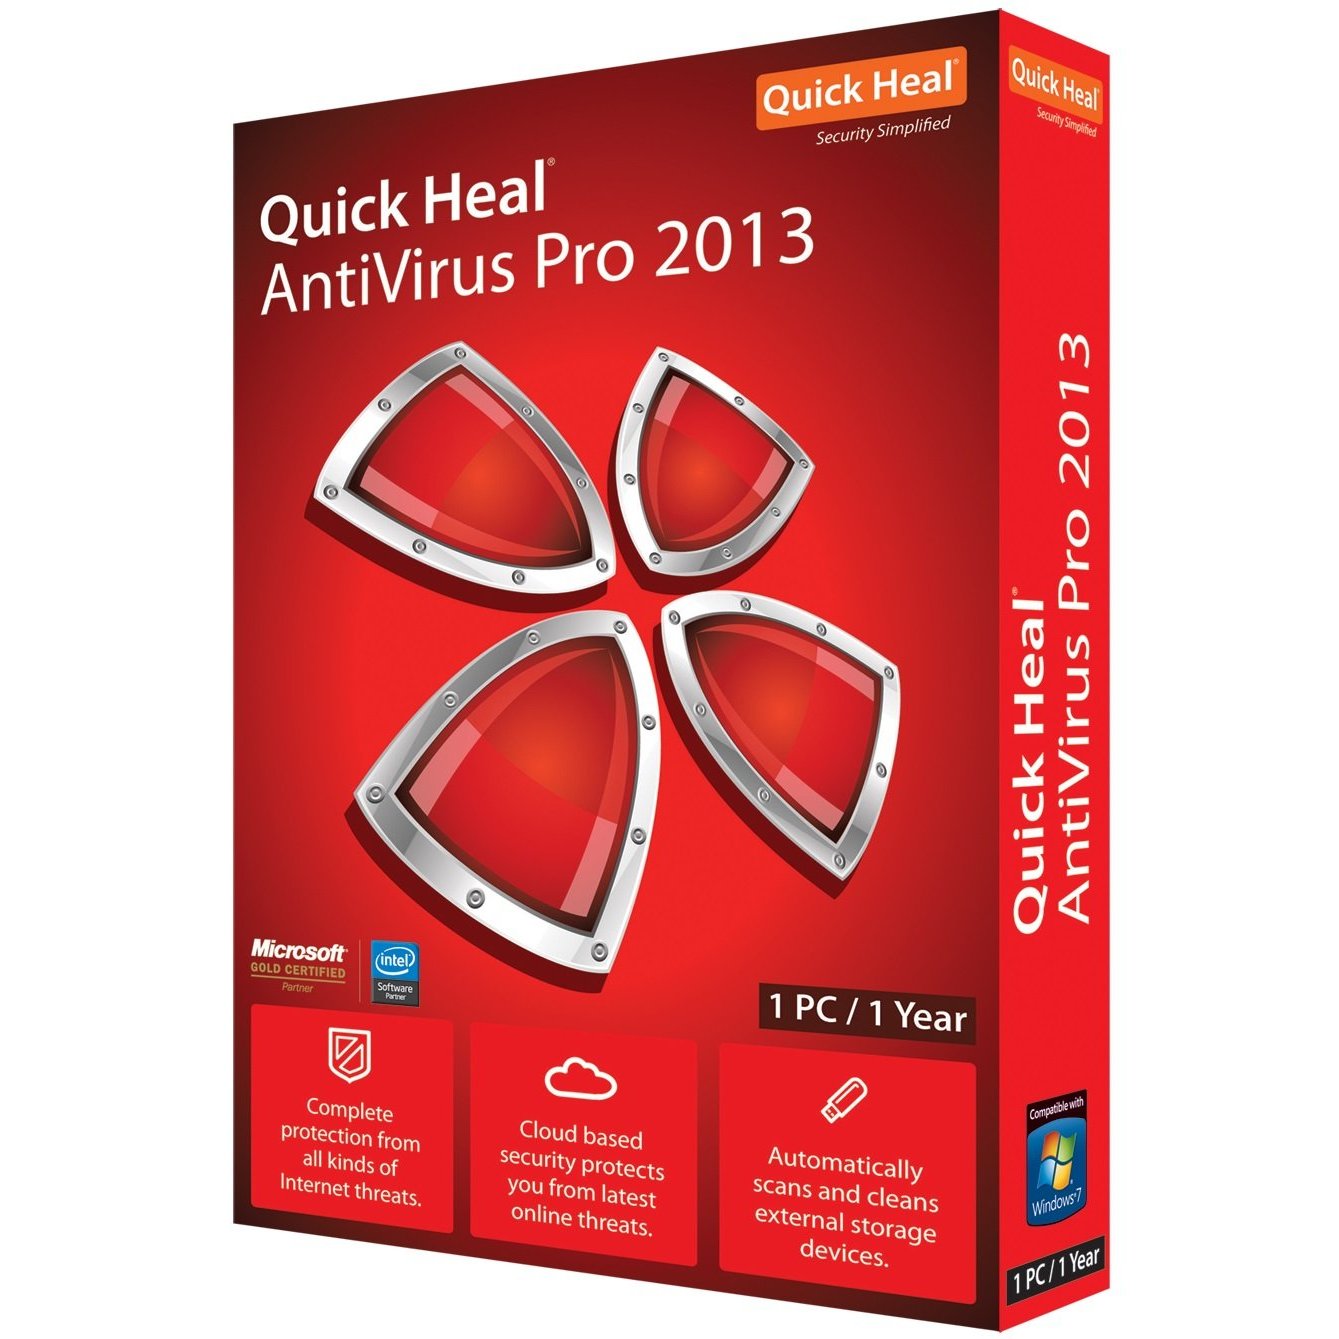 Quick heal antivirus pro trial version